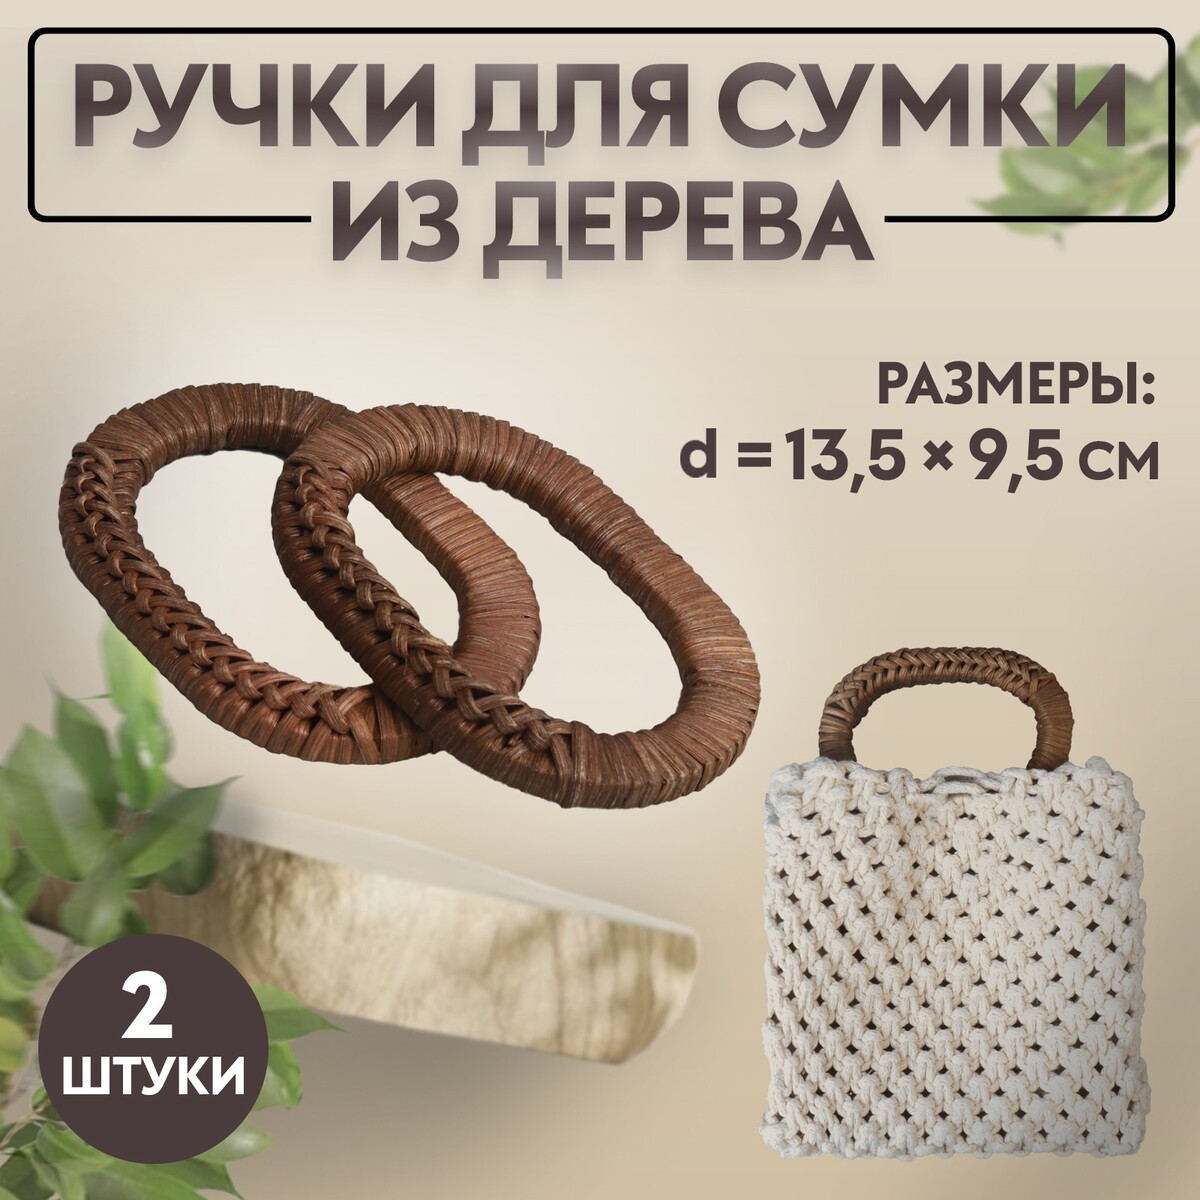 Ручки для сумок деревянные, плетеные, d = 9,8 × 5,9 / 13,5 × 9,5 см, 2 шт, цвет коричневый